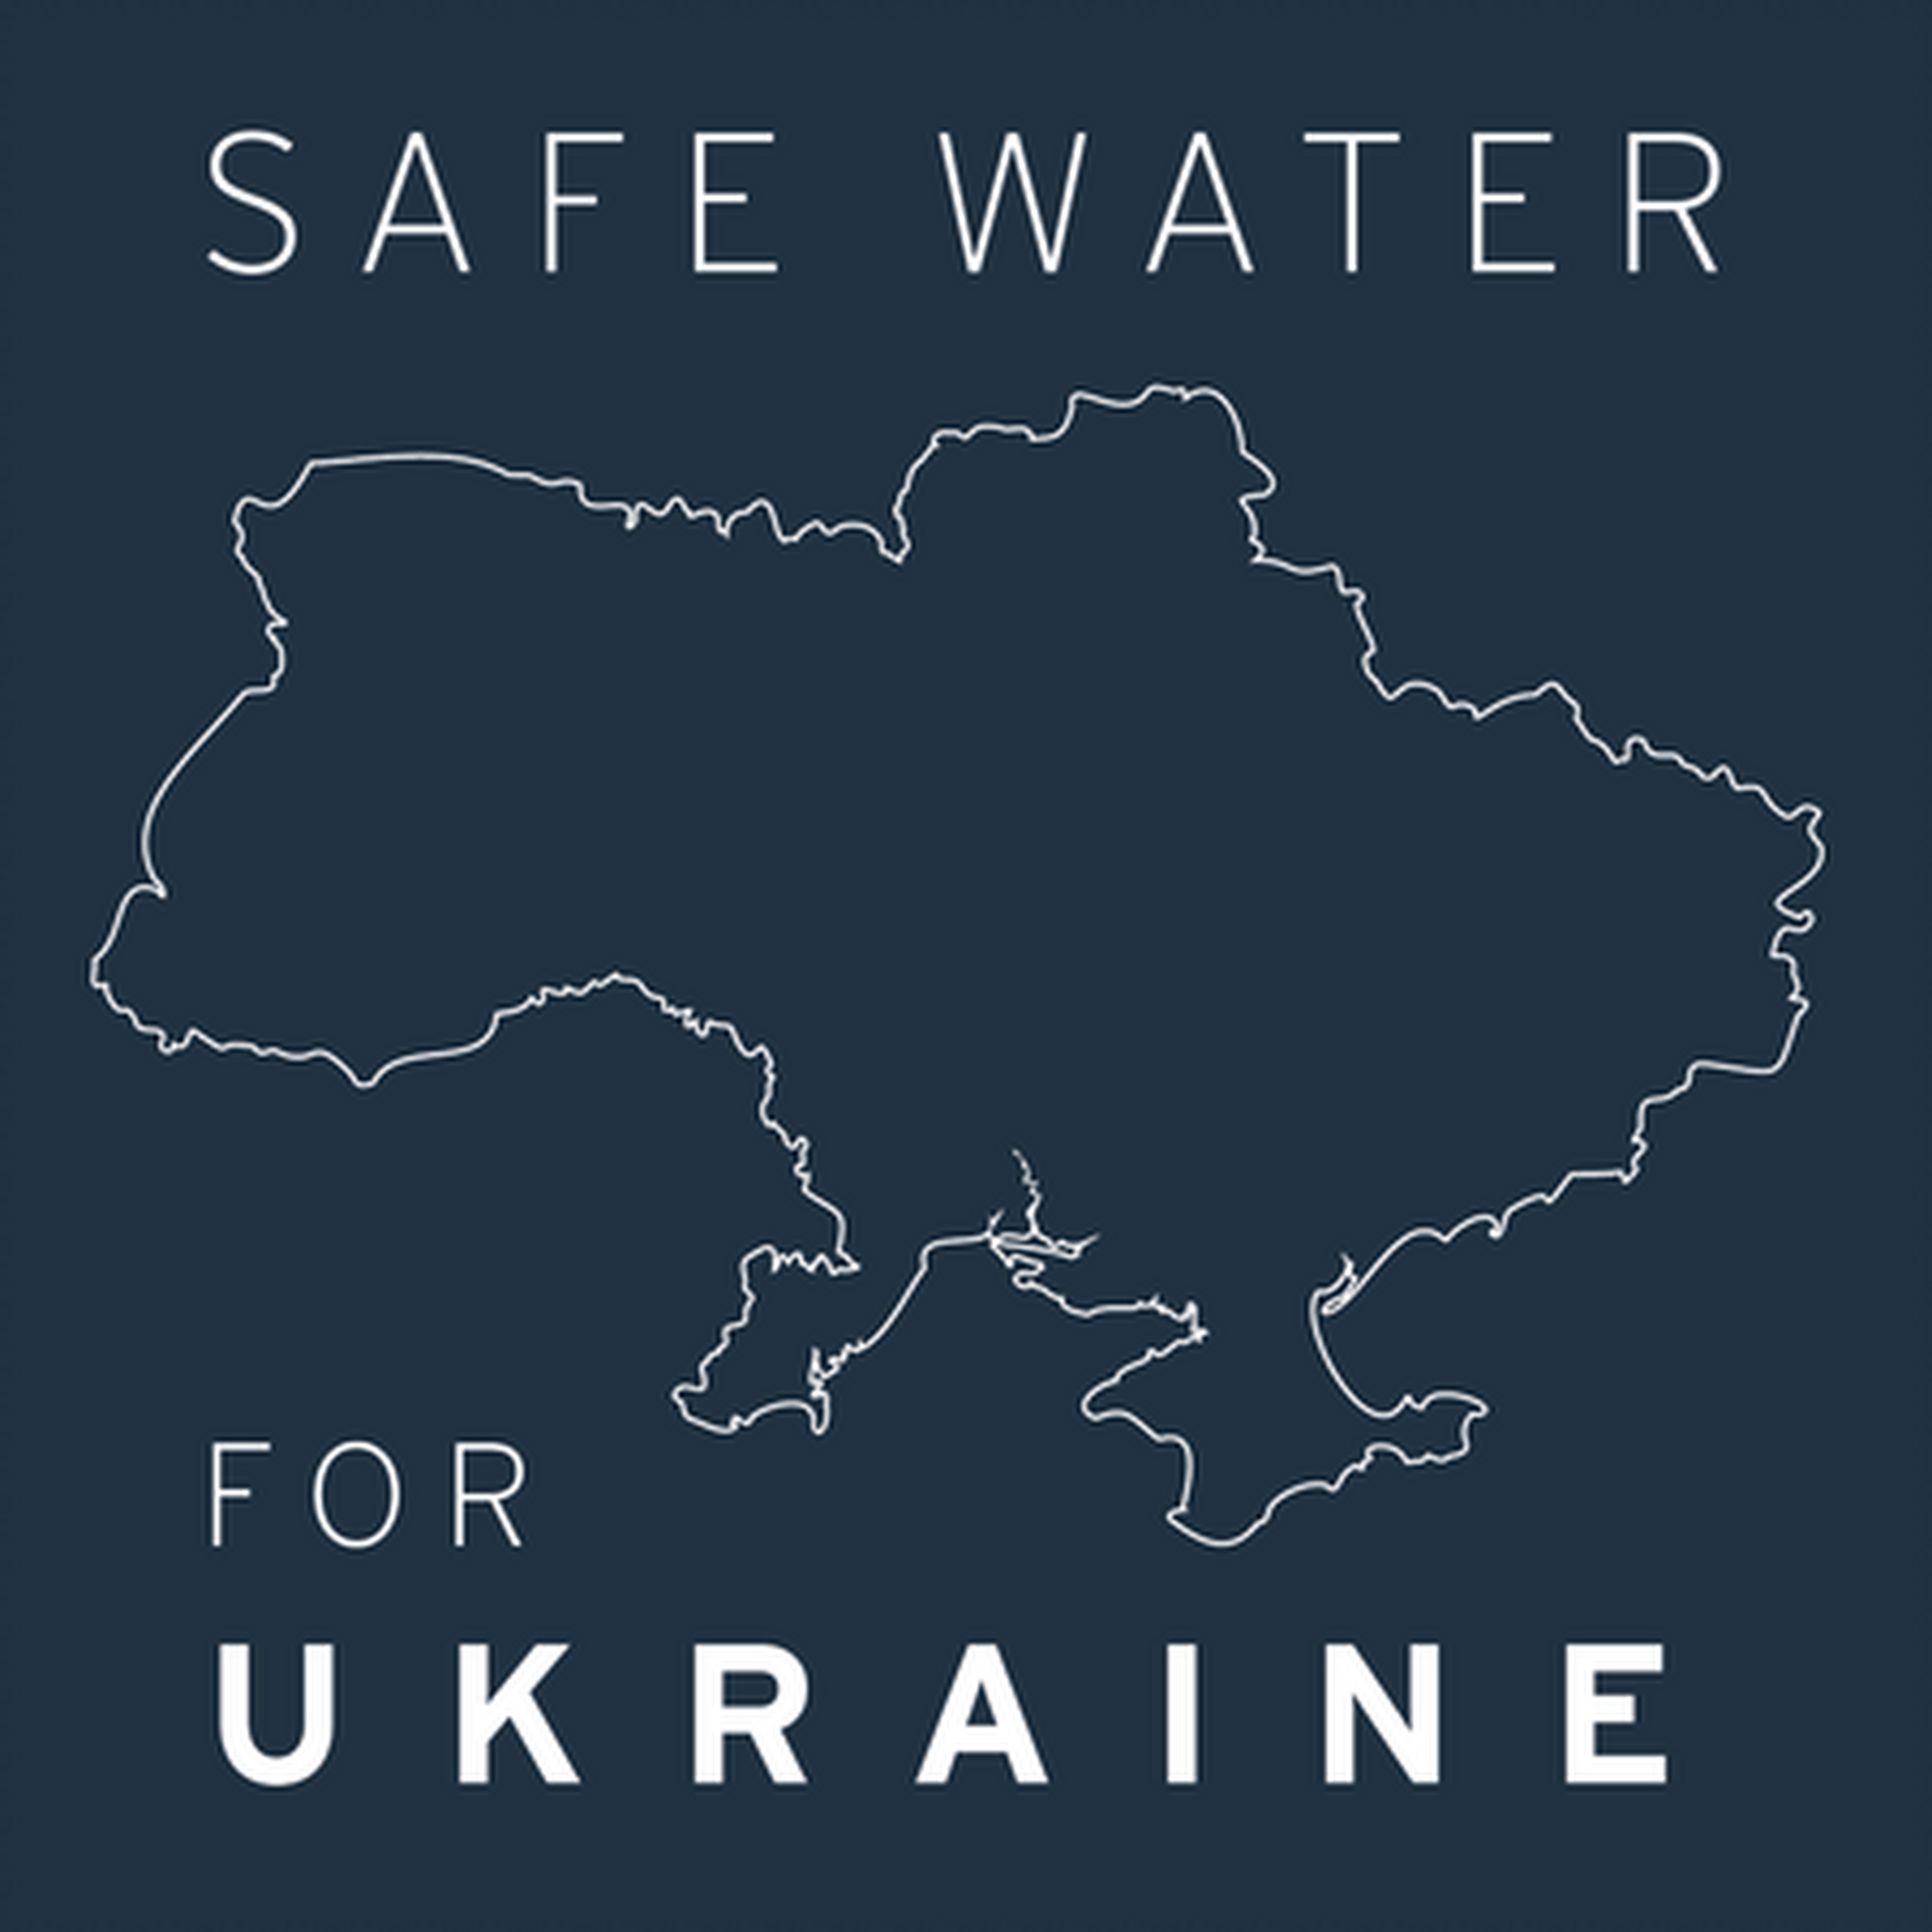 LifeStraw spendet für die Ukraine